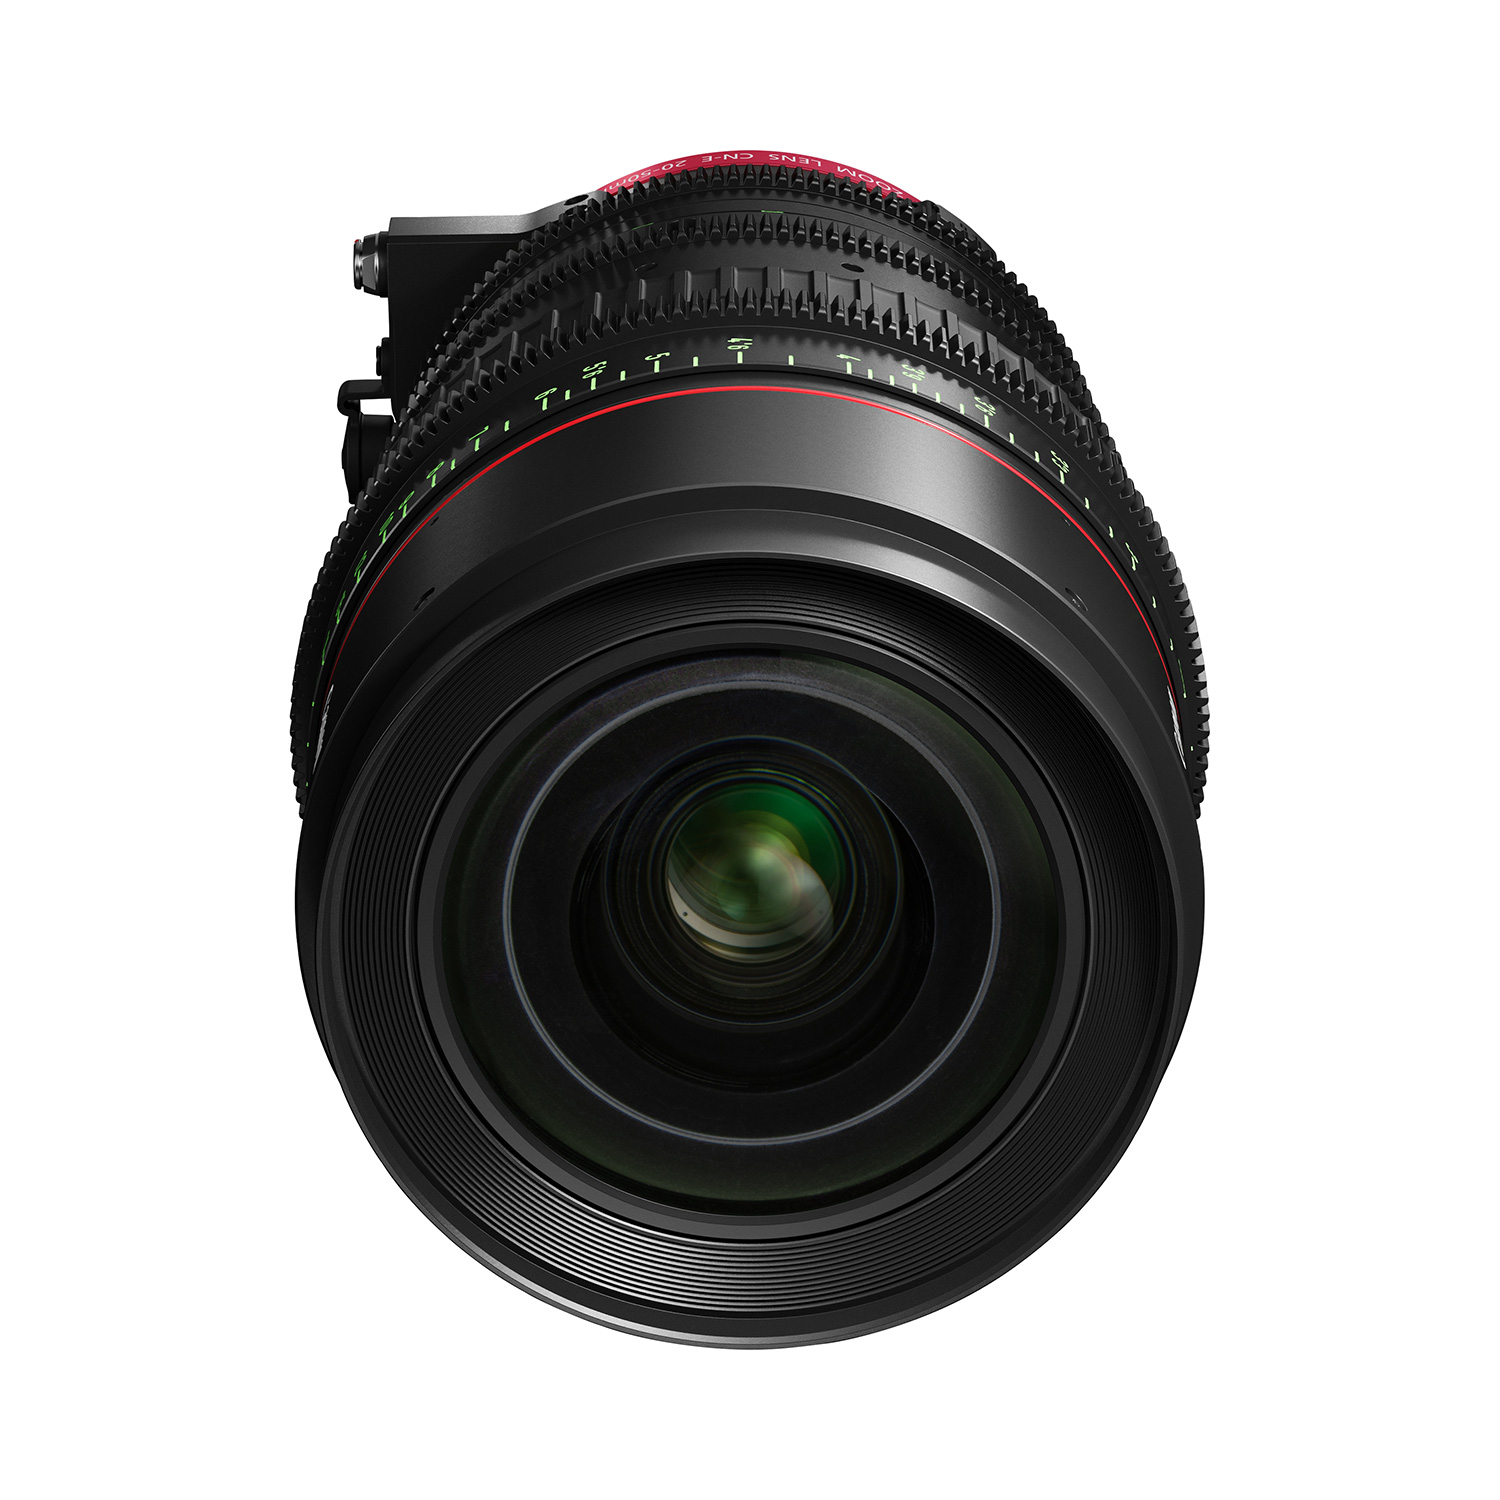 Canon Flex Zoom CN-E20-50mm T2.4 L FP